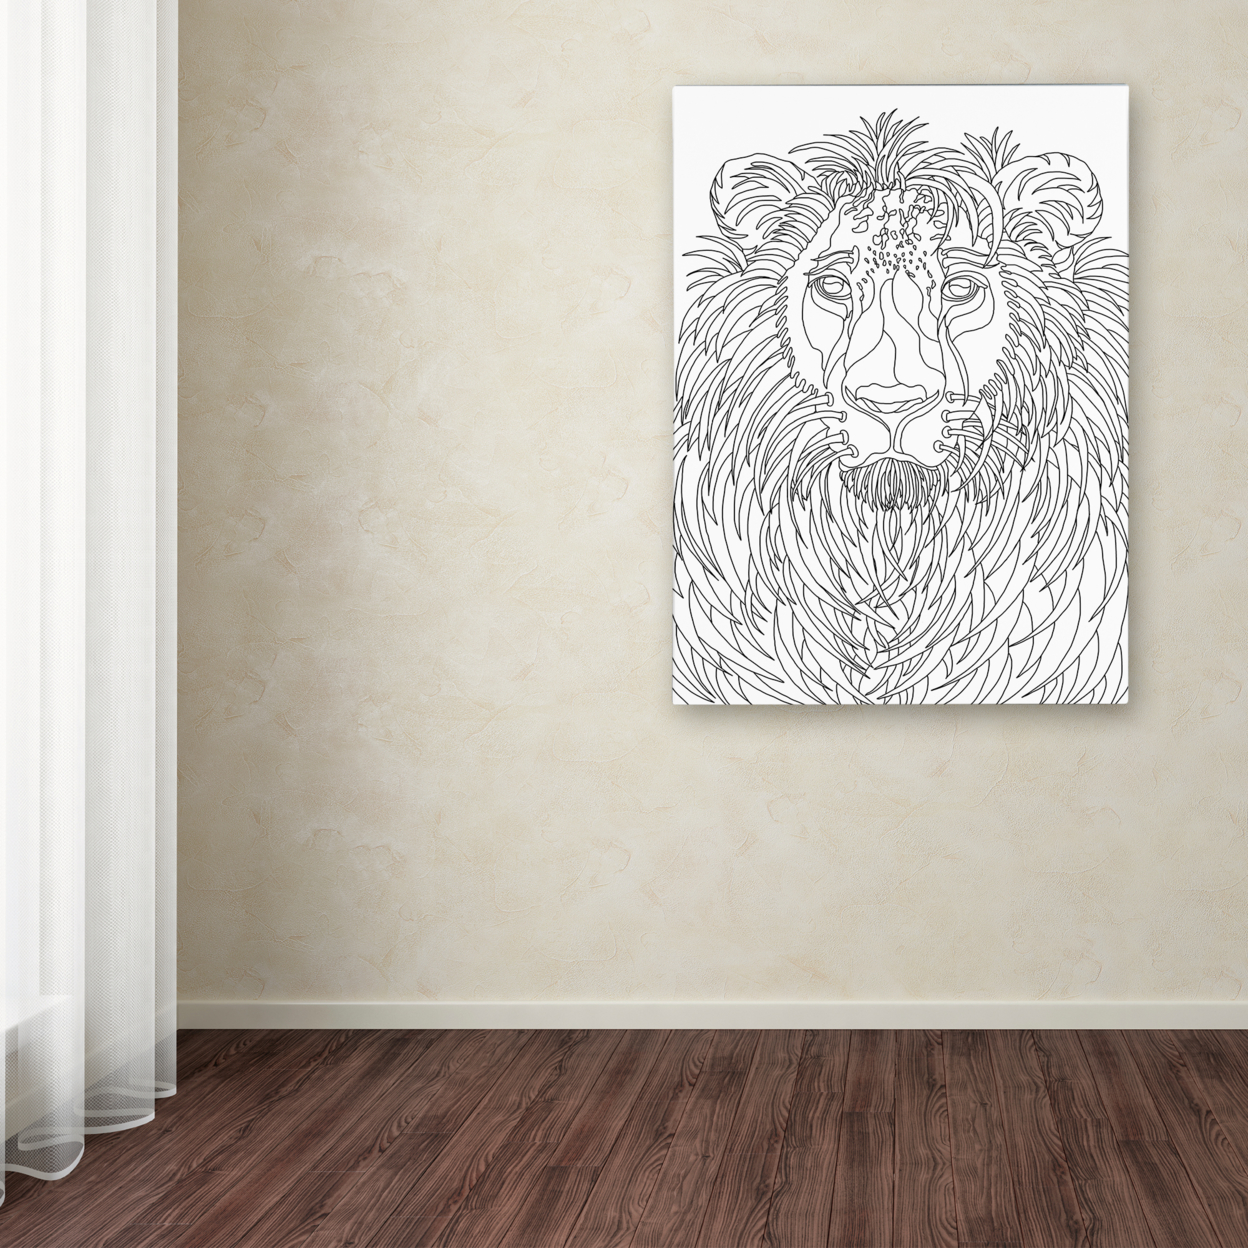 Kathy G. Ahrens 'Lion' Canvas Wall Art 35 X 47 Inches